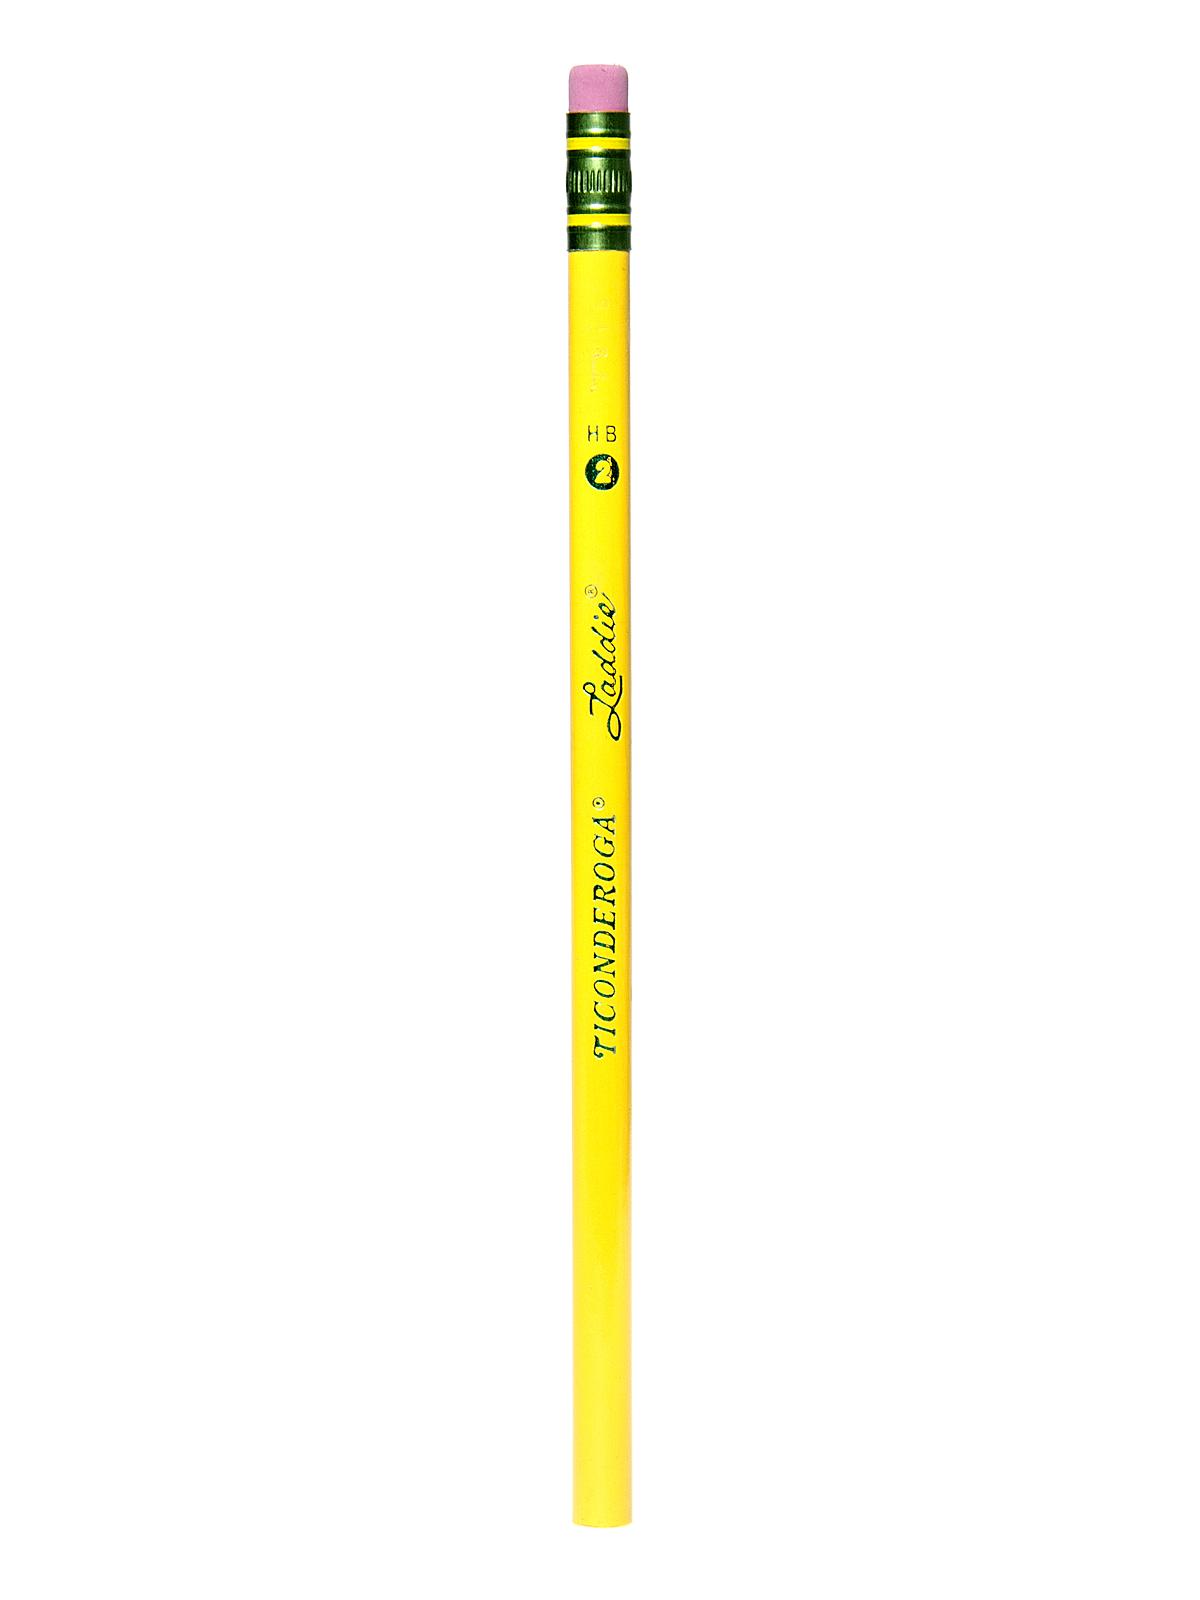 Ticonderoga Laddie Pencil No. 2 Hb